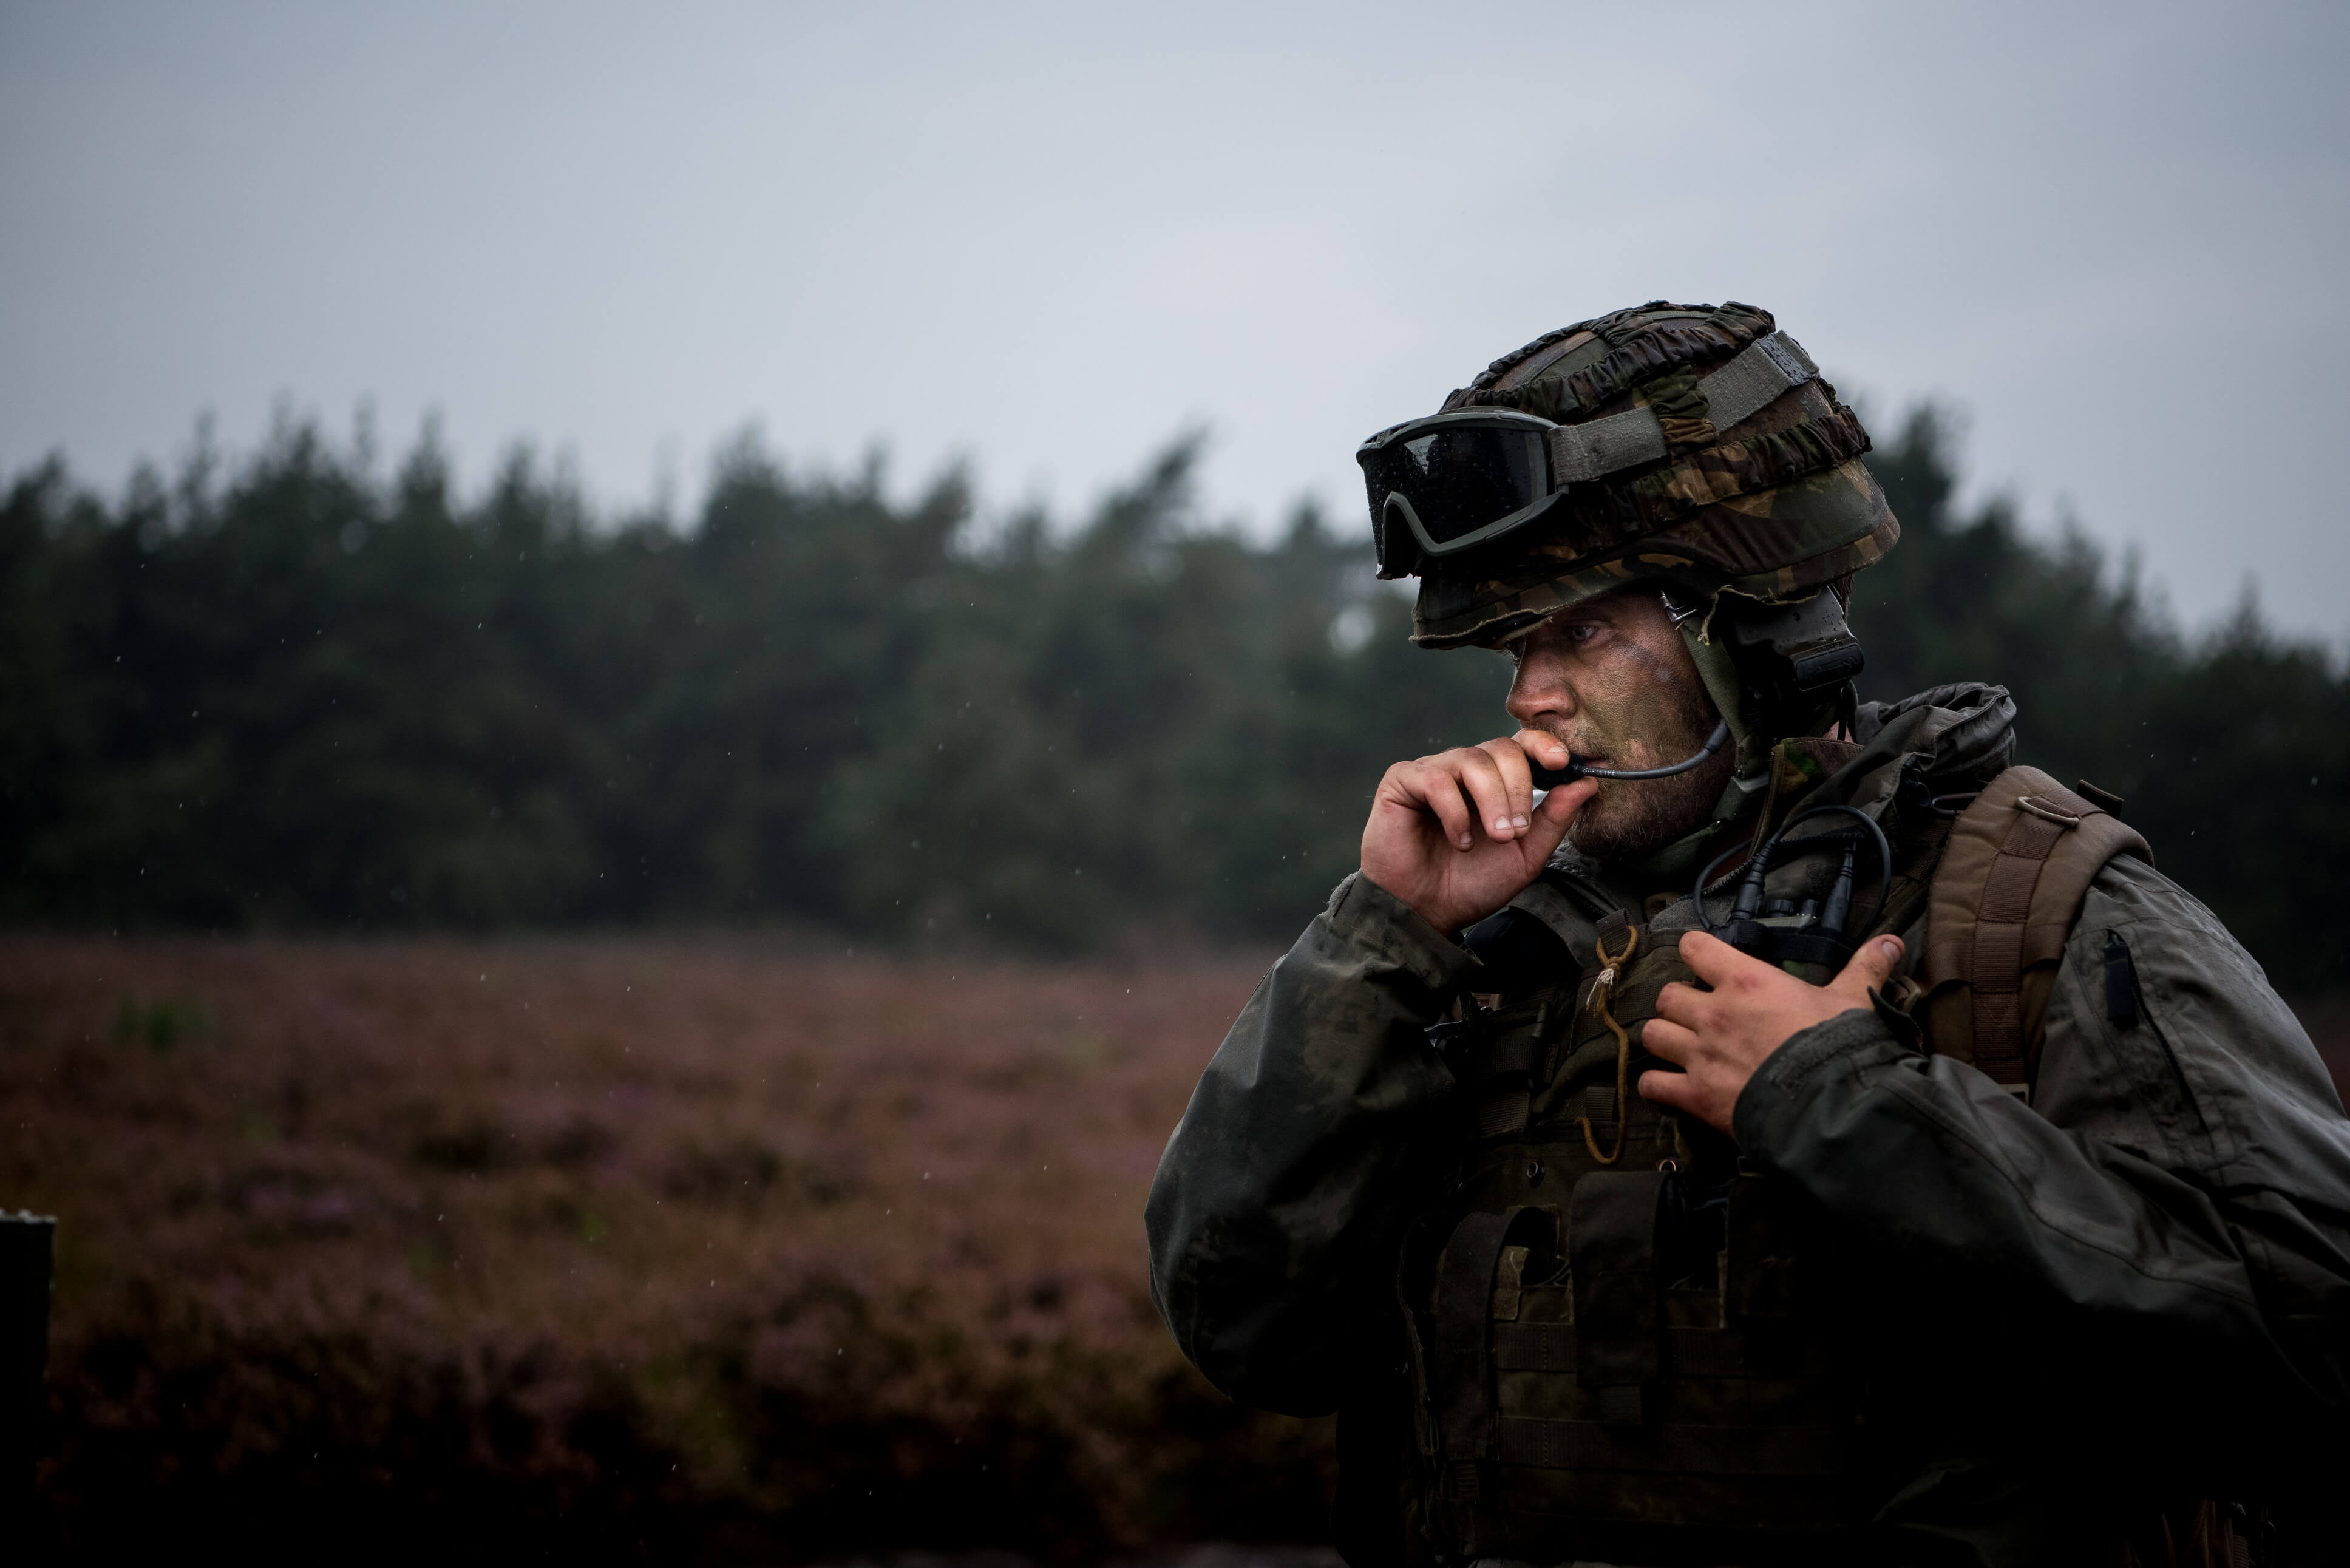 Klep-Nederlandse artillerie soldaat traint met helikopters. © Camp Heumensoord/Flickr